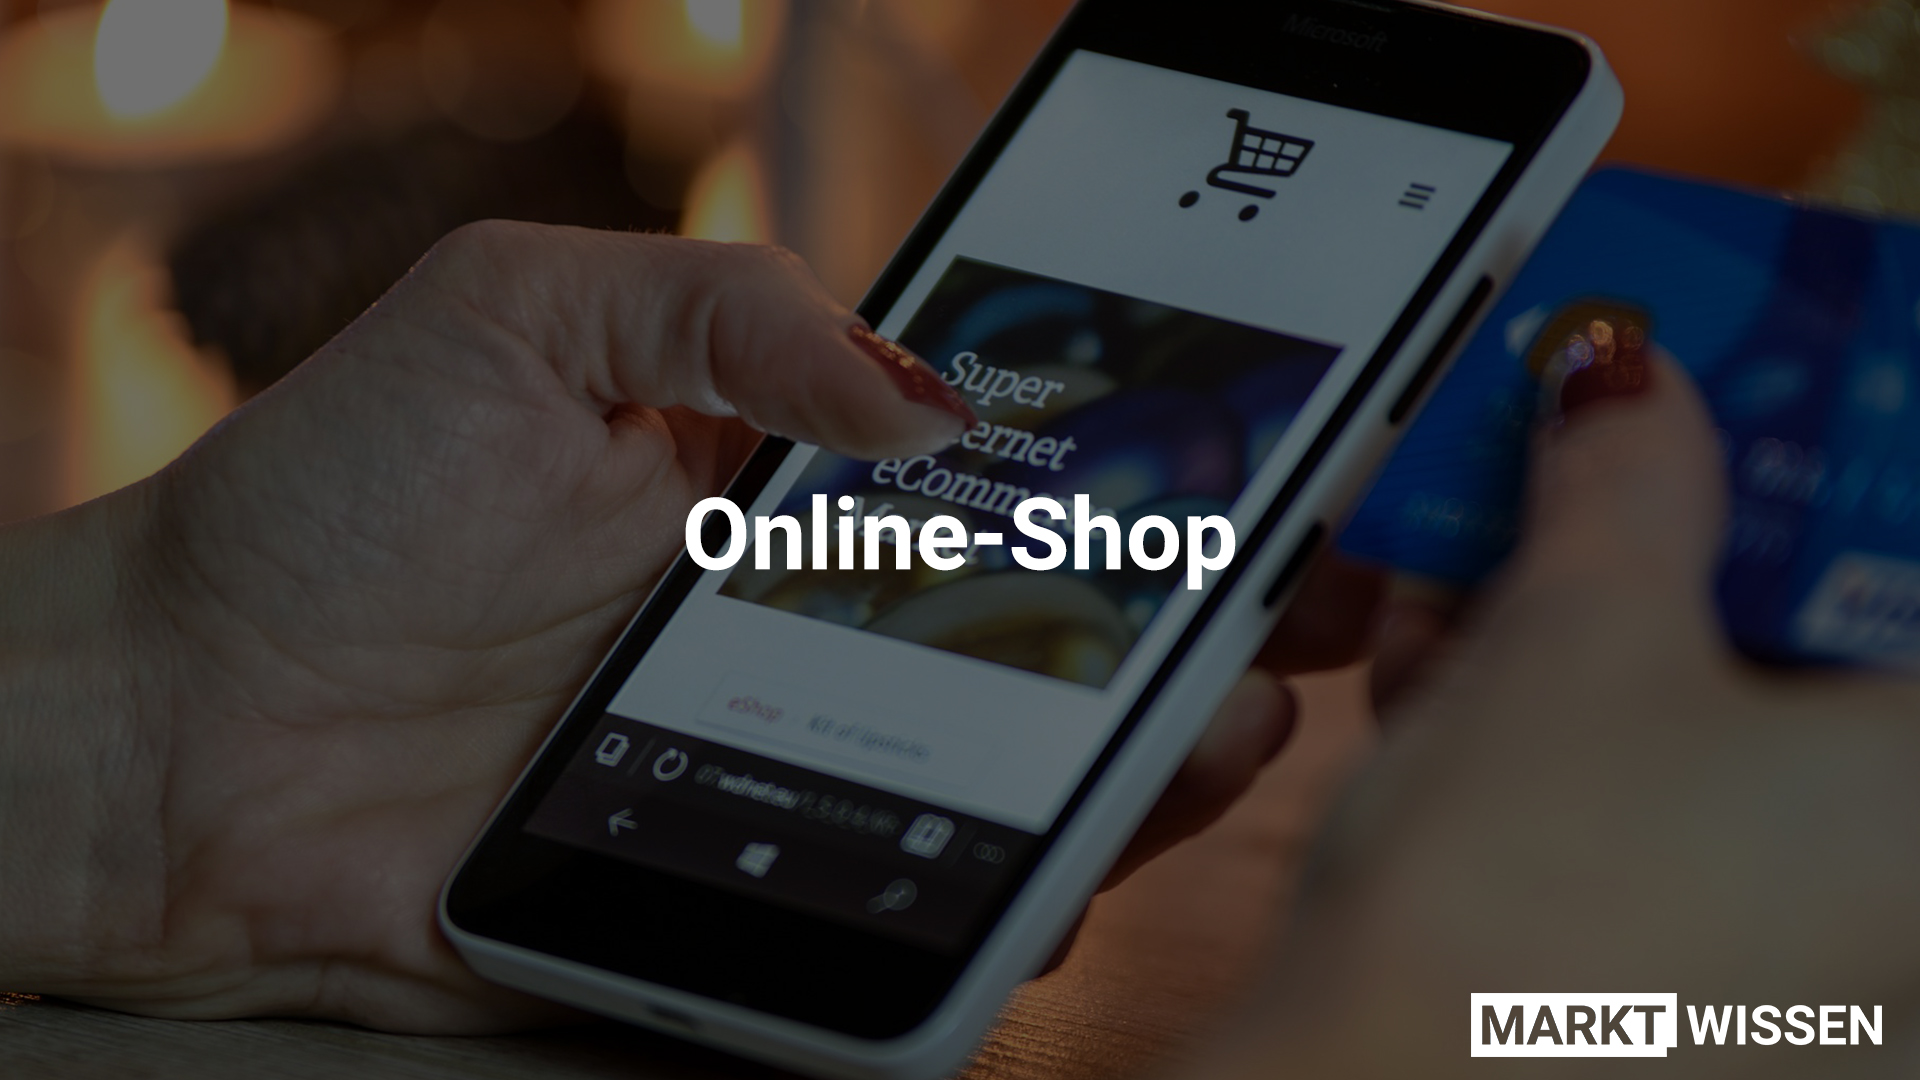 Online-Shop als Side Hustle